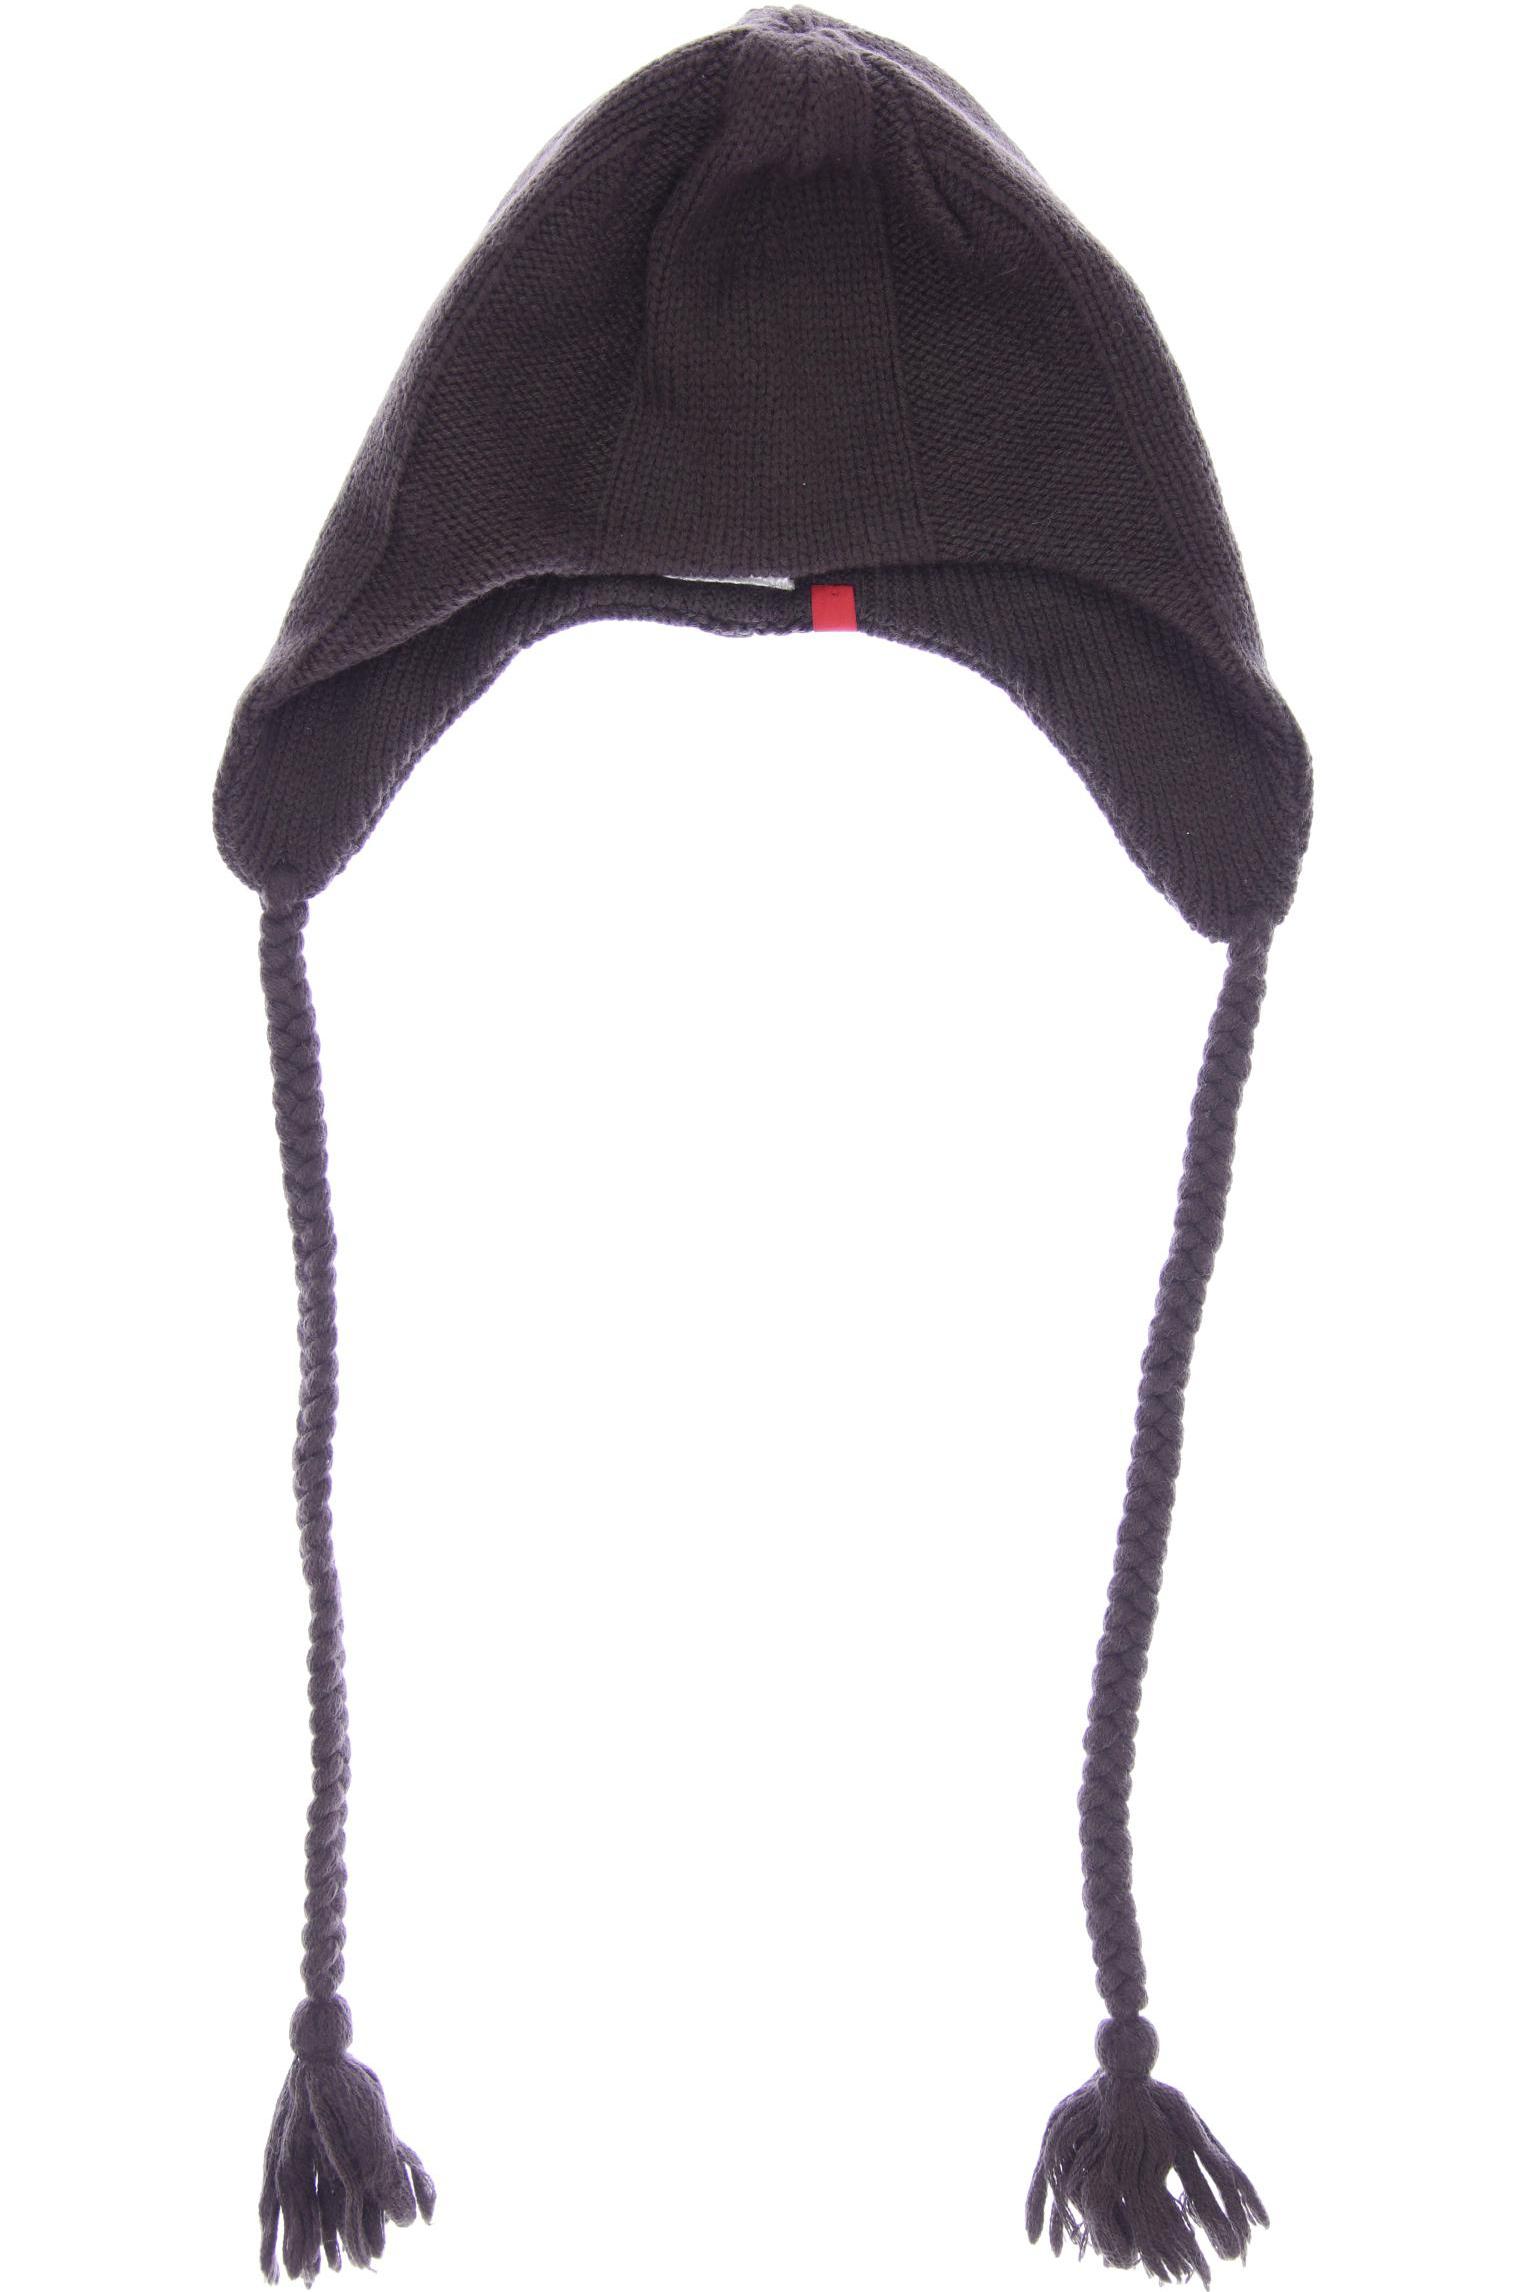 Esprit Damen Hut/Mütze, braun, Gr. uni von Esprit